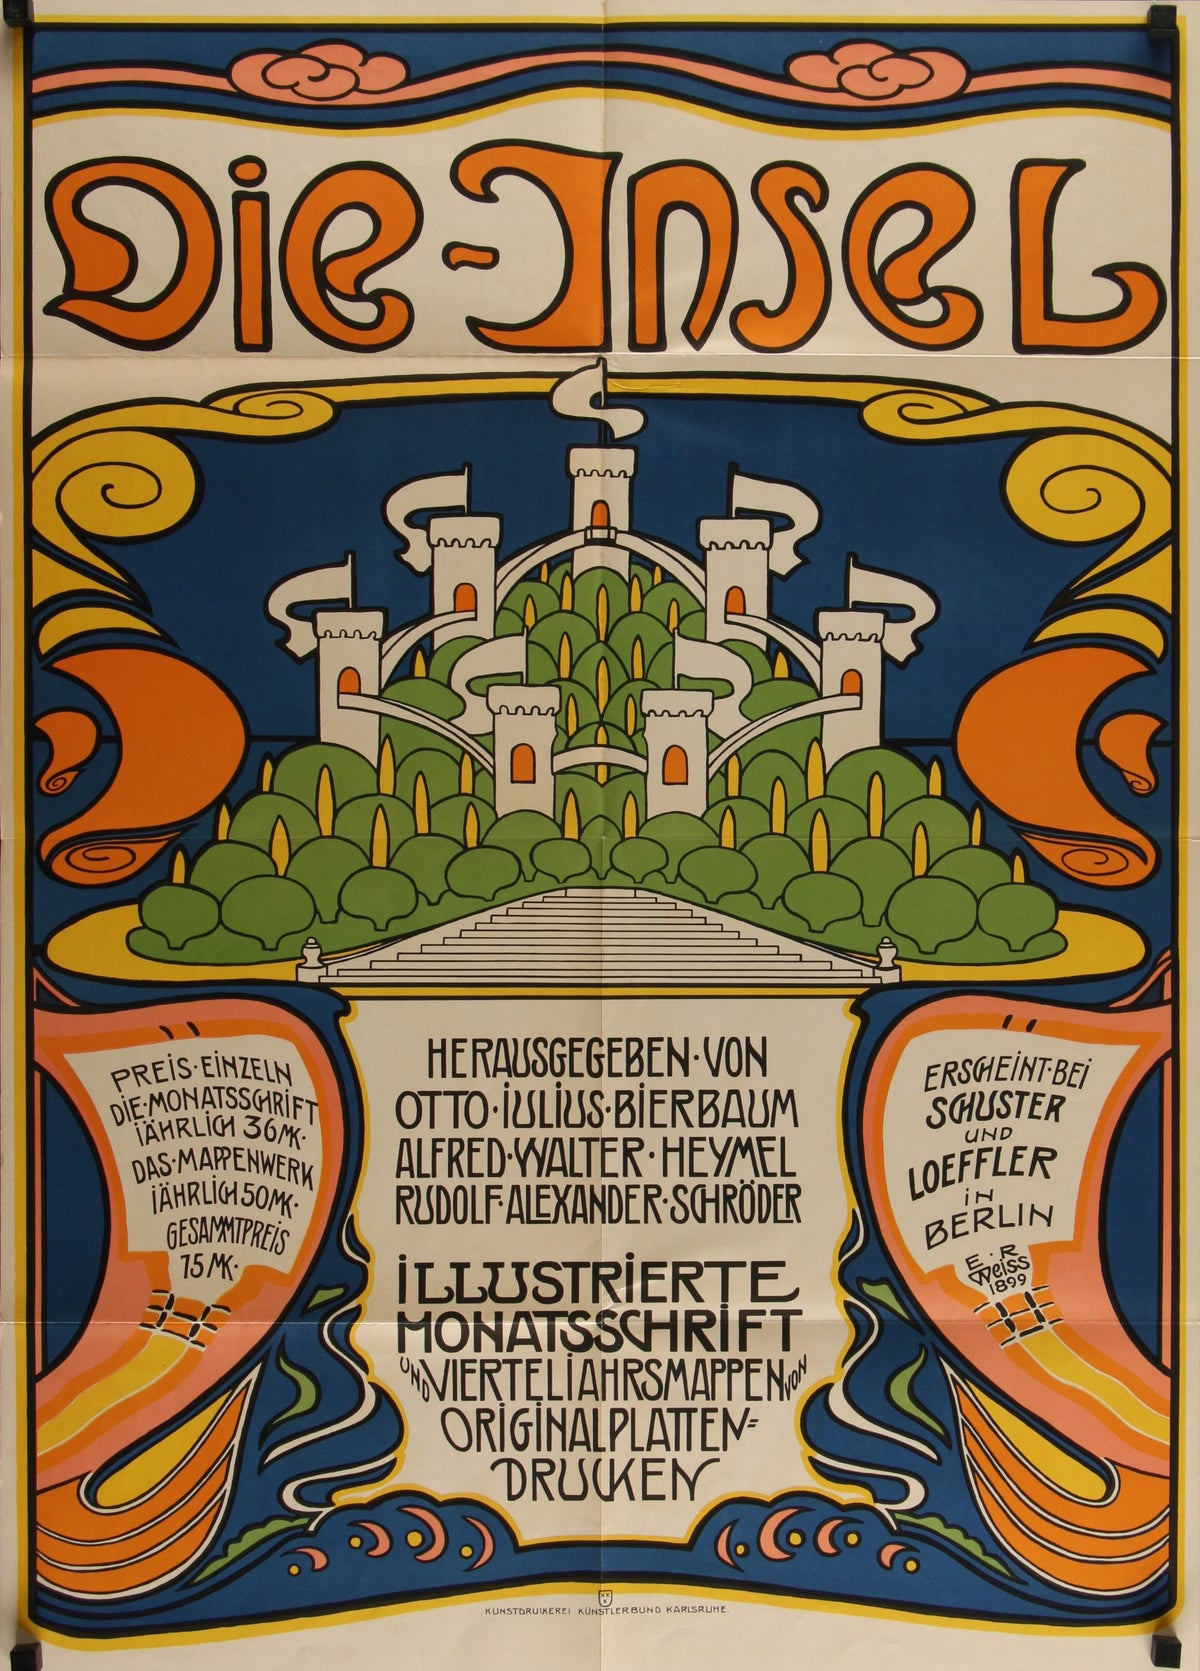 Das Deutsche Plakat_3 - Authentic Vintage Poster